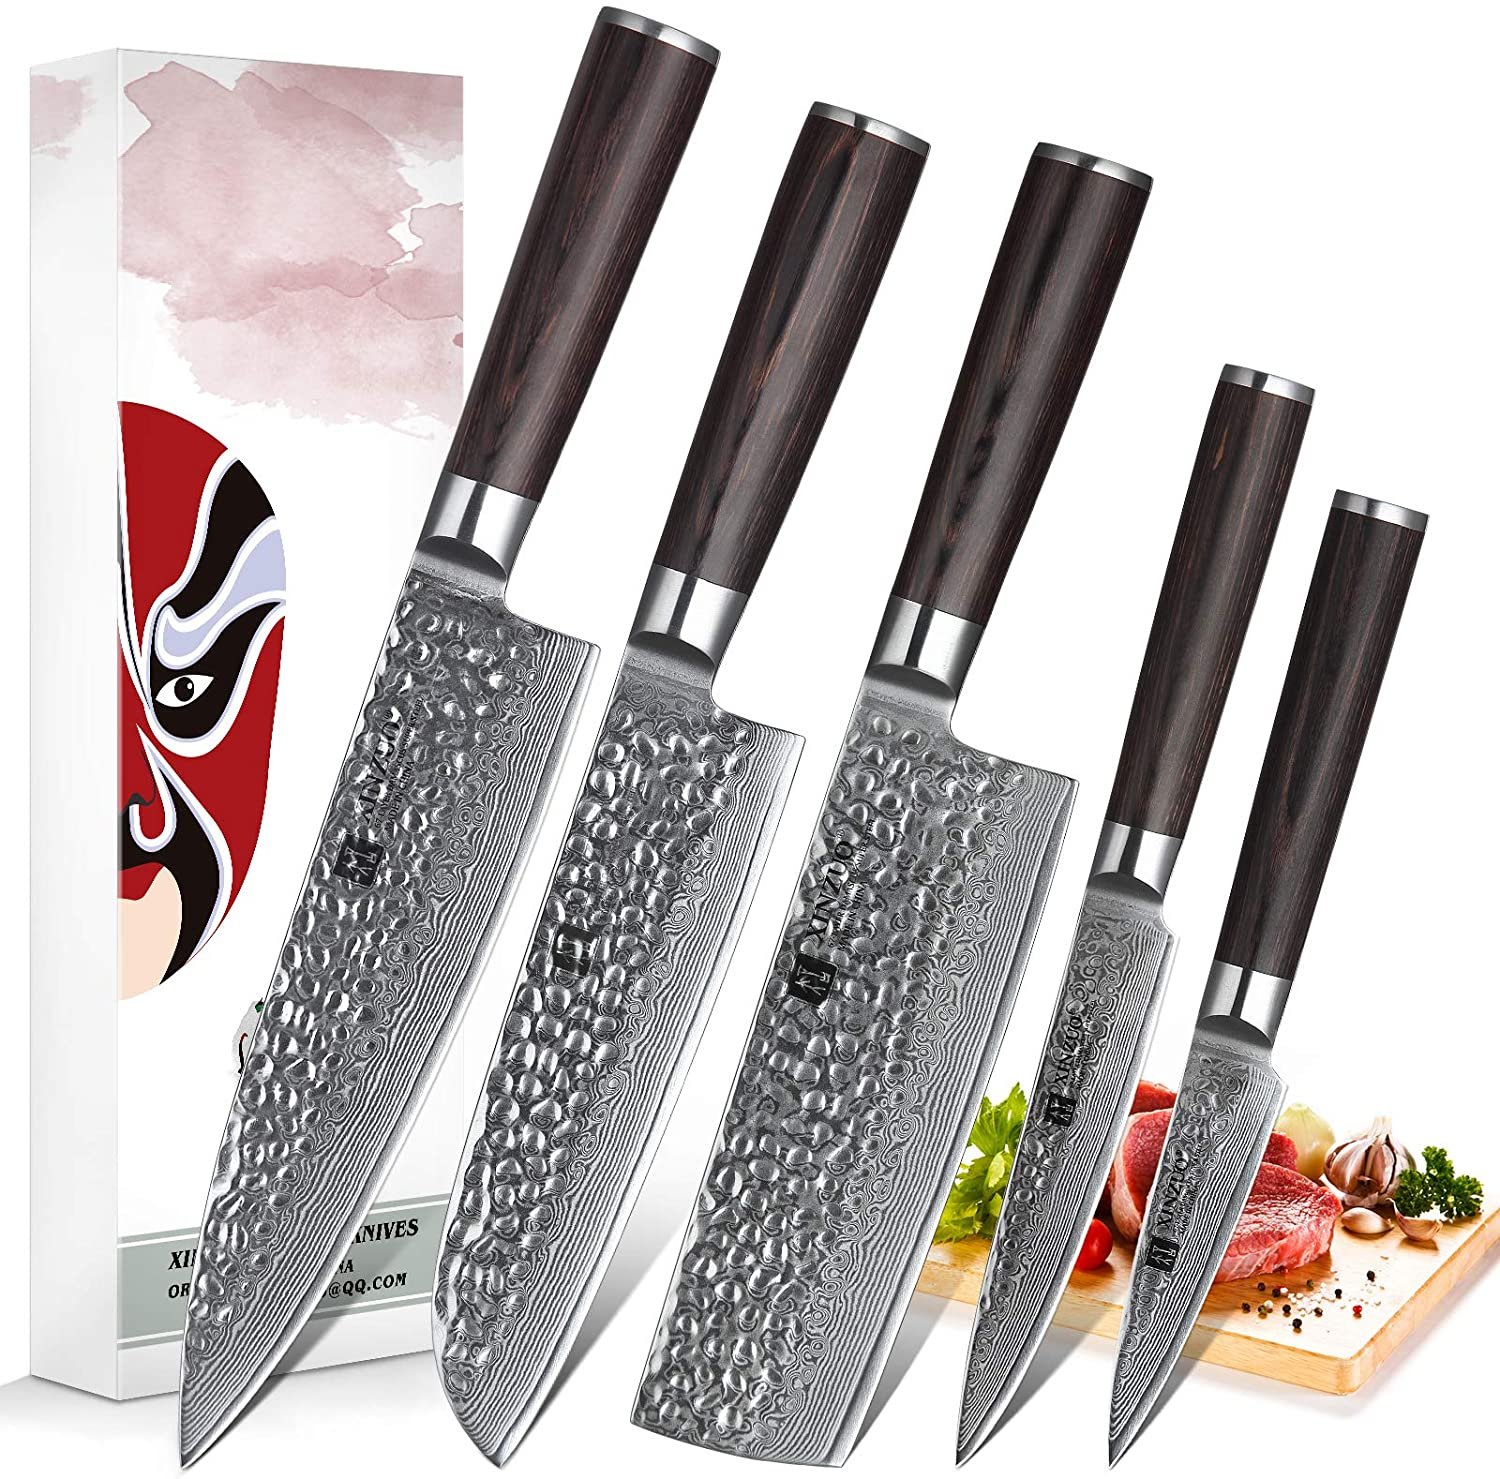 damascus steel kitchen knives | allaroundthekitchen